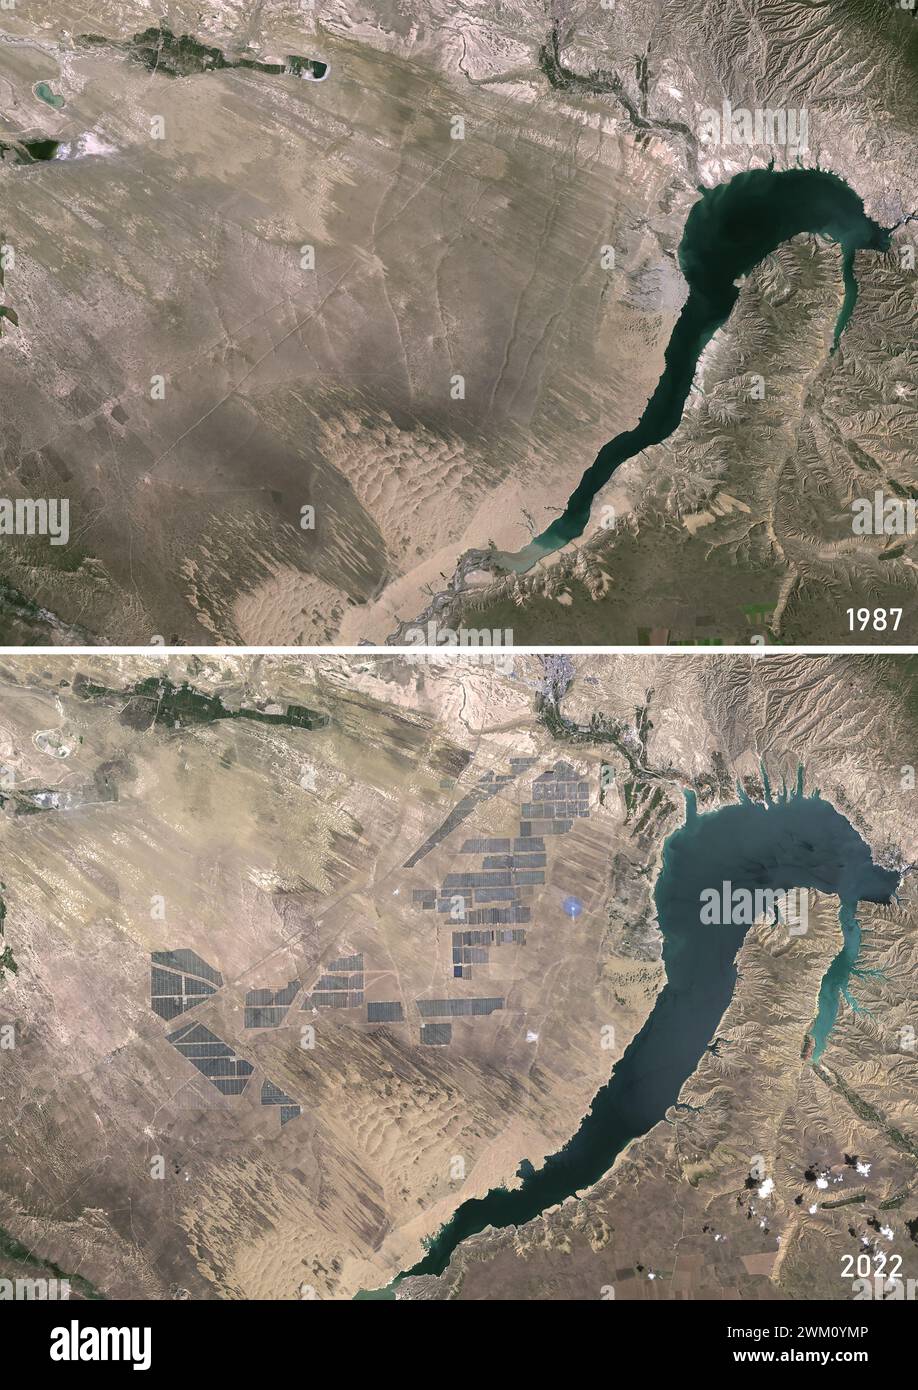 Immagine satellitare a colori del bacino idrico della diga di Longyangxia nel 1987 e del Longyangxia Dam Solar Park nel 2022, che è rapidamente cresciuto a nord del bacino idrico. Il sito si trova nella provincia occidentale cinese del Qinghai. Foto Stock